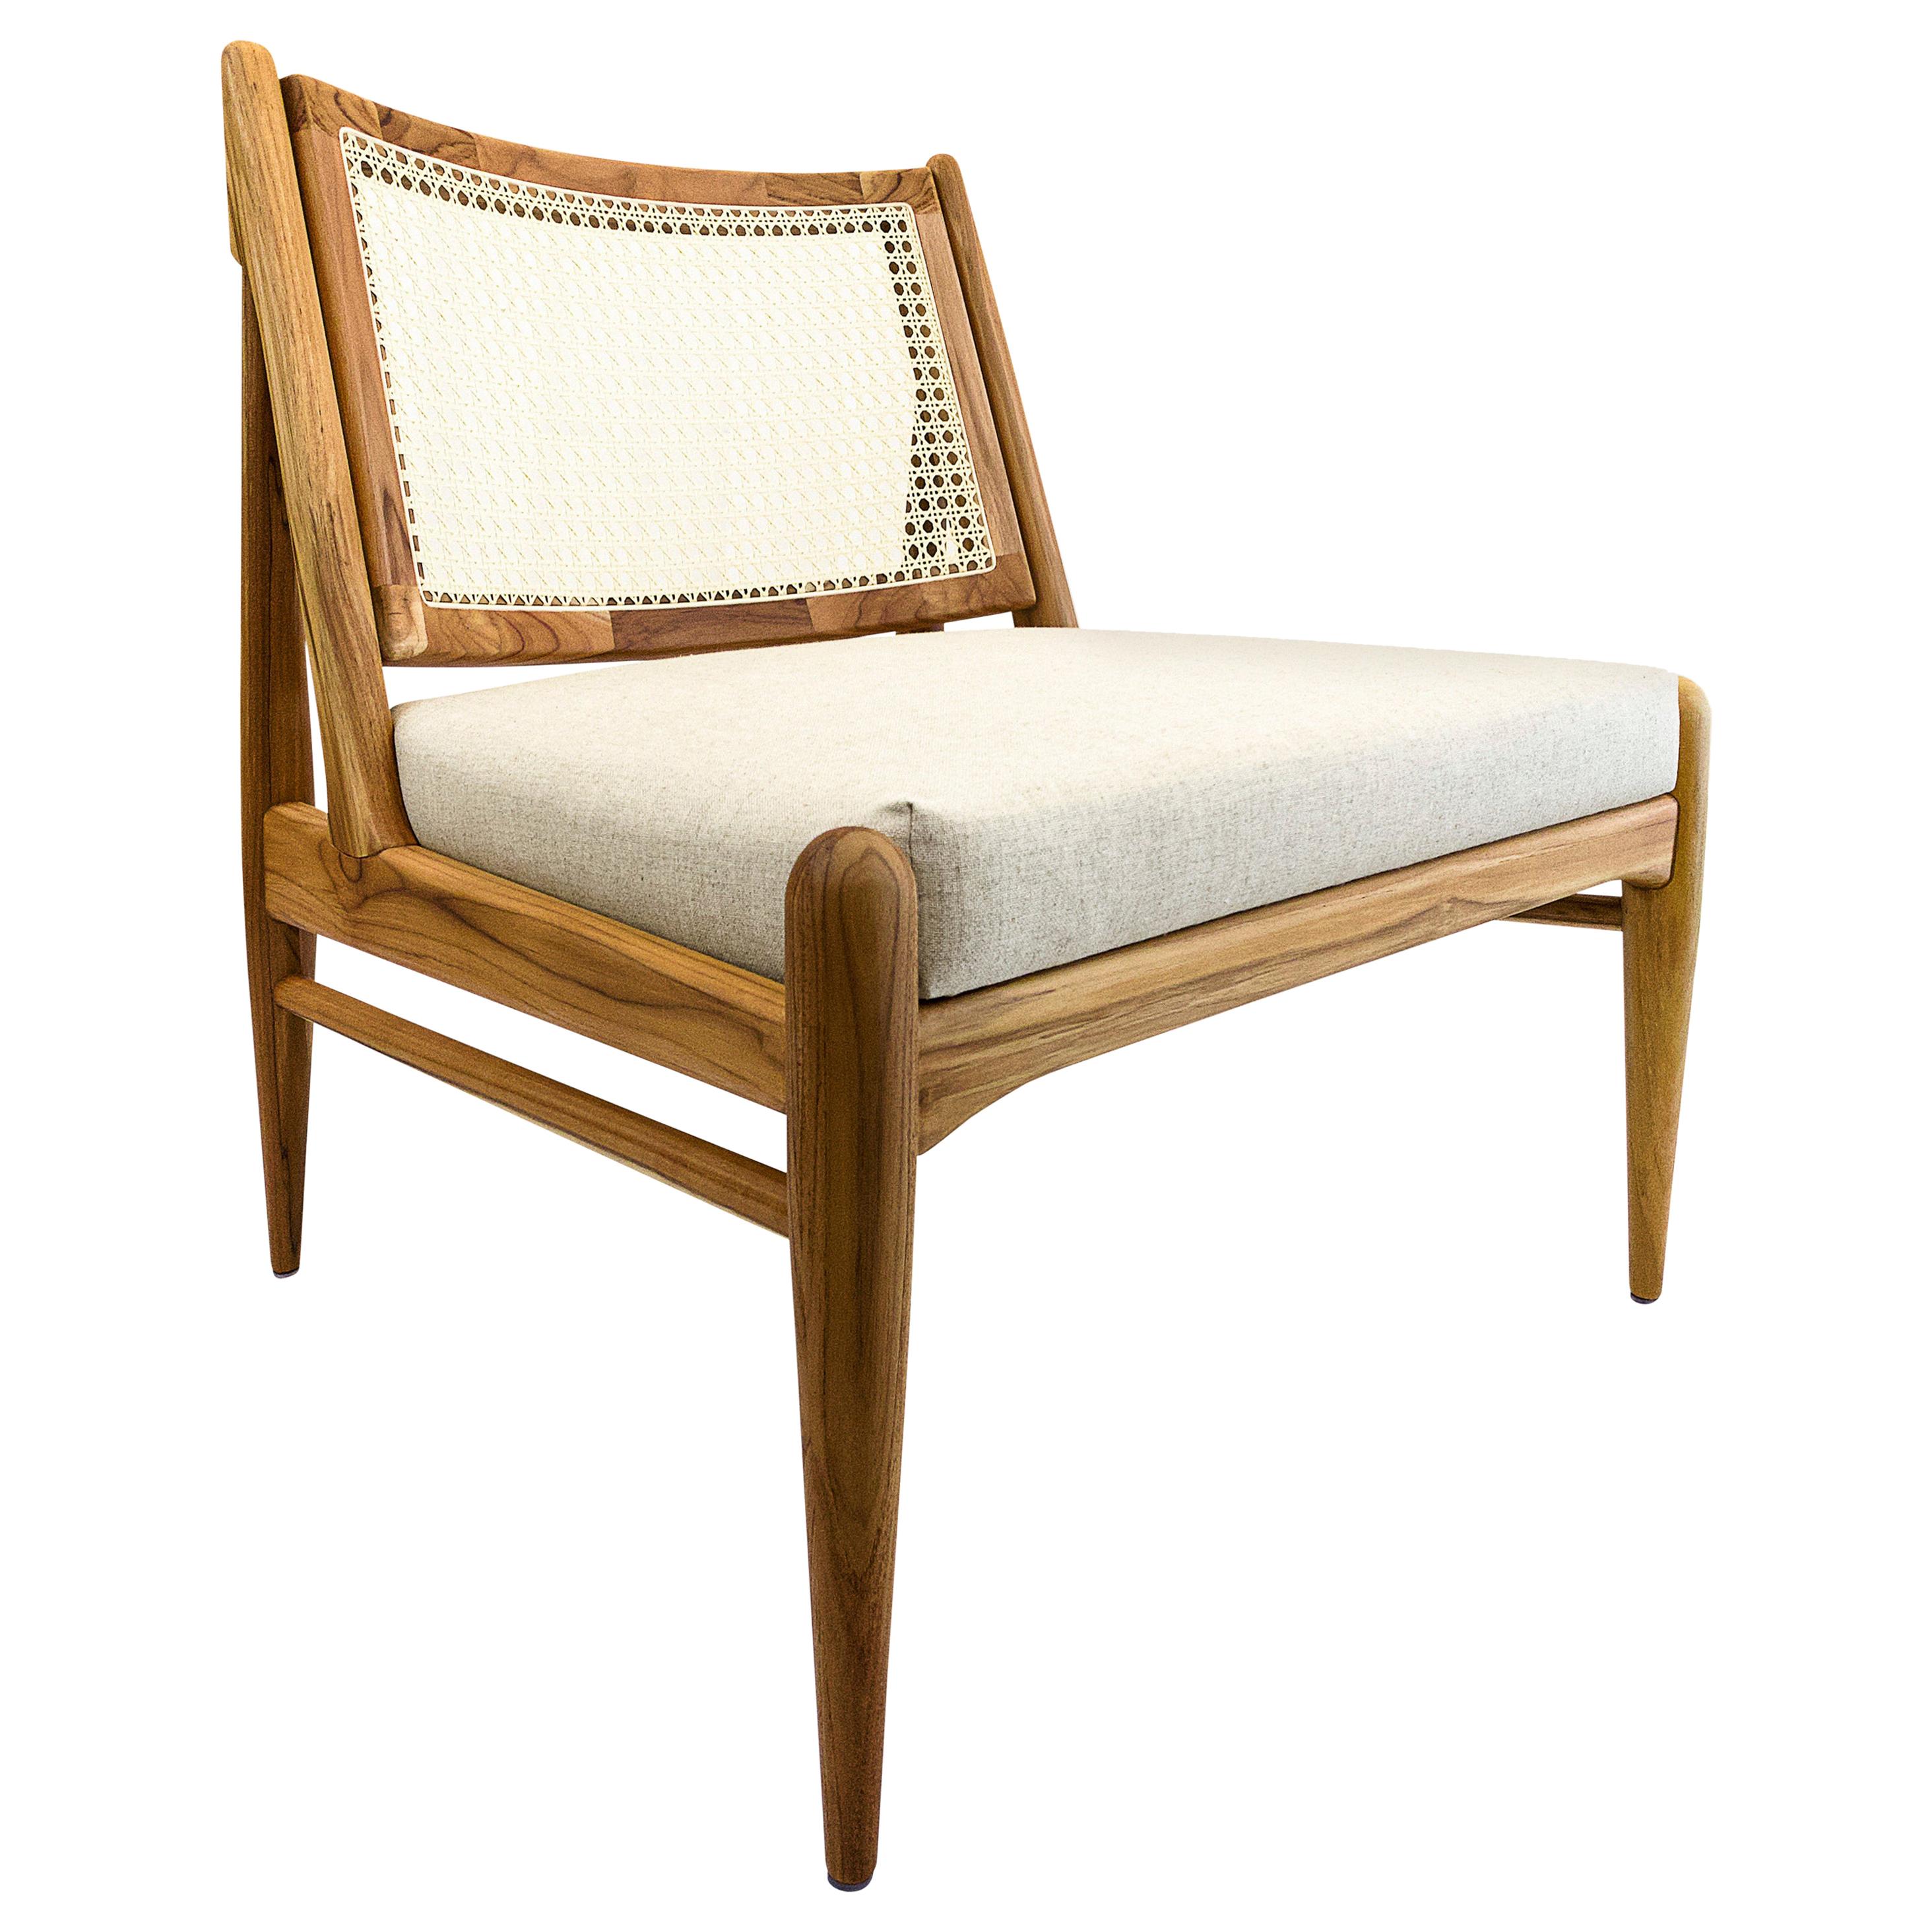 La chaise Donna est une nouvelle façon de se détendre grâce à sa finition en bois de teck, au tissu avoine rembourré qui recouvre son assise et à son magnifique dossier en rotin. Cette chaise a été conçue par notre équipe d'Uultis Design afin